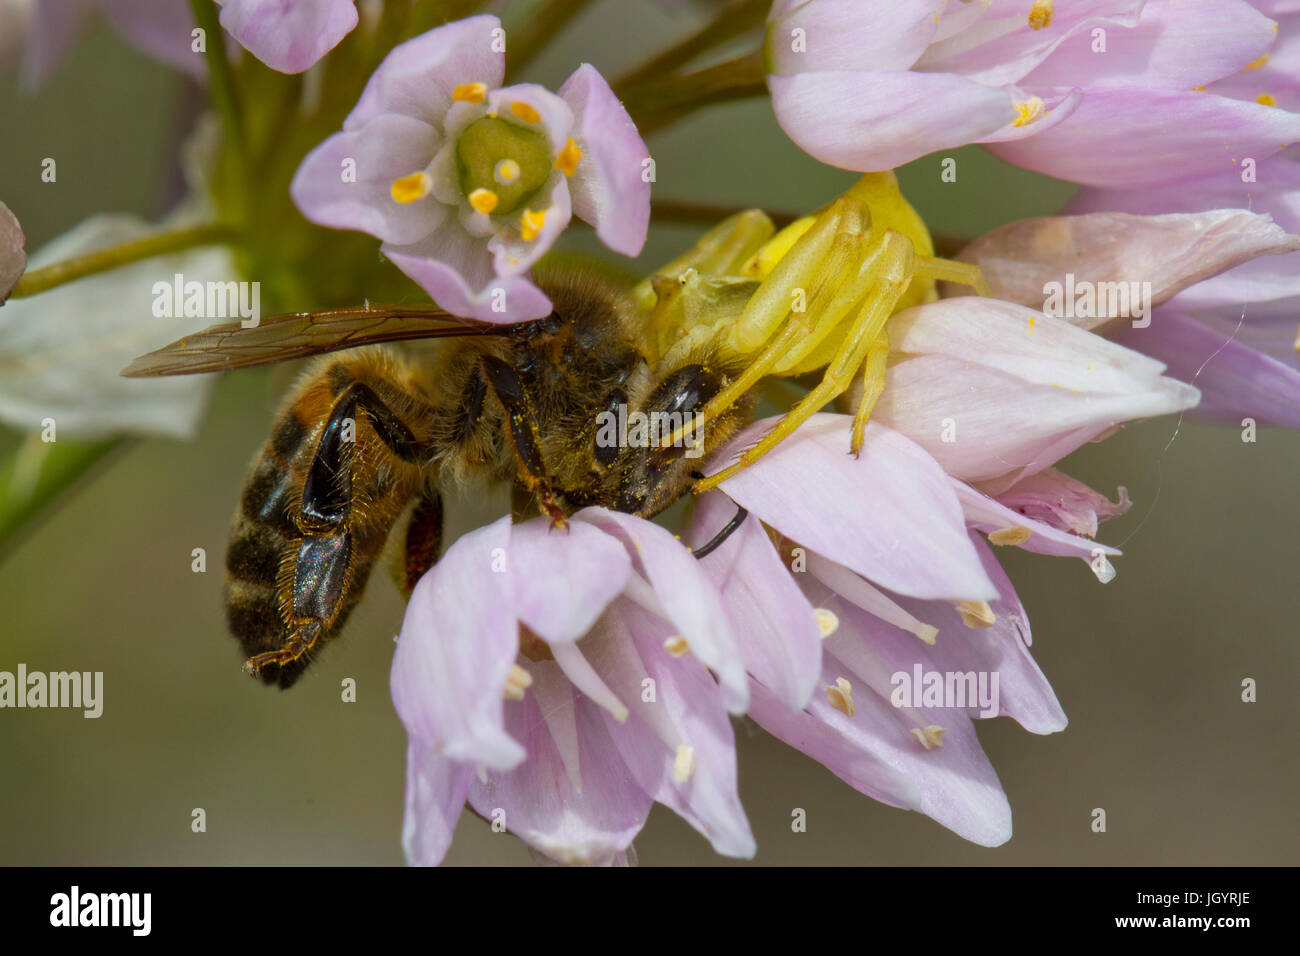 Araignée crabe se nourrissant d'une abeille (Apis mellifera) entre l'ail rose (Allium roseum) fleurs. Chaîne des Alpilles, Bouches-du-Rhône, France. Mai. Banque D'Images